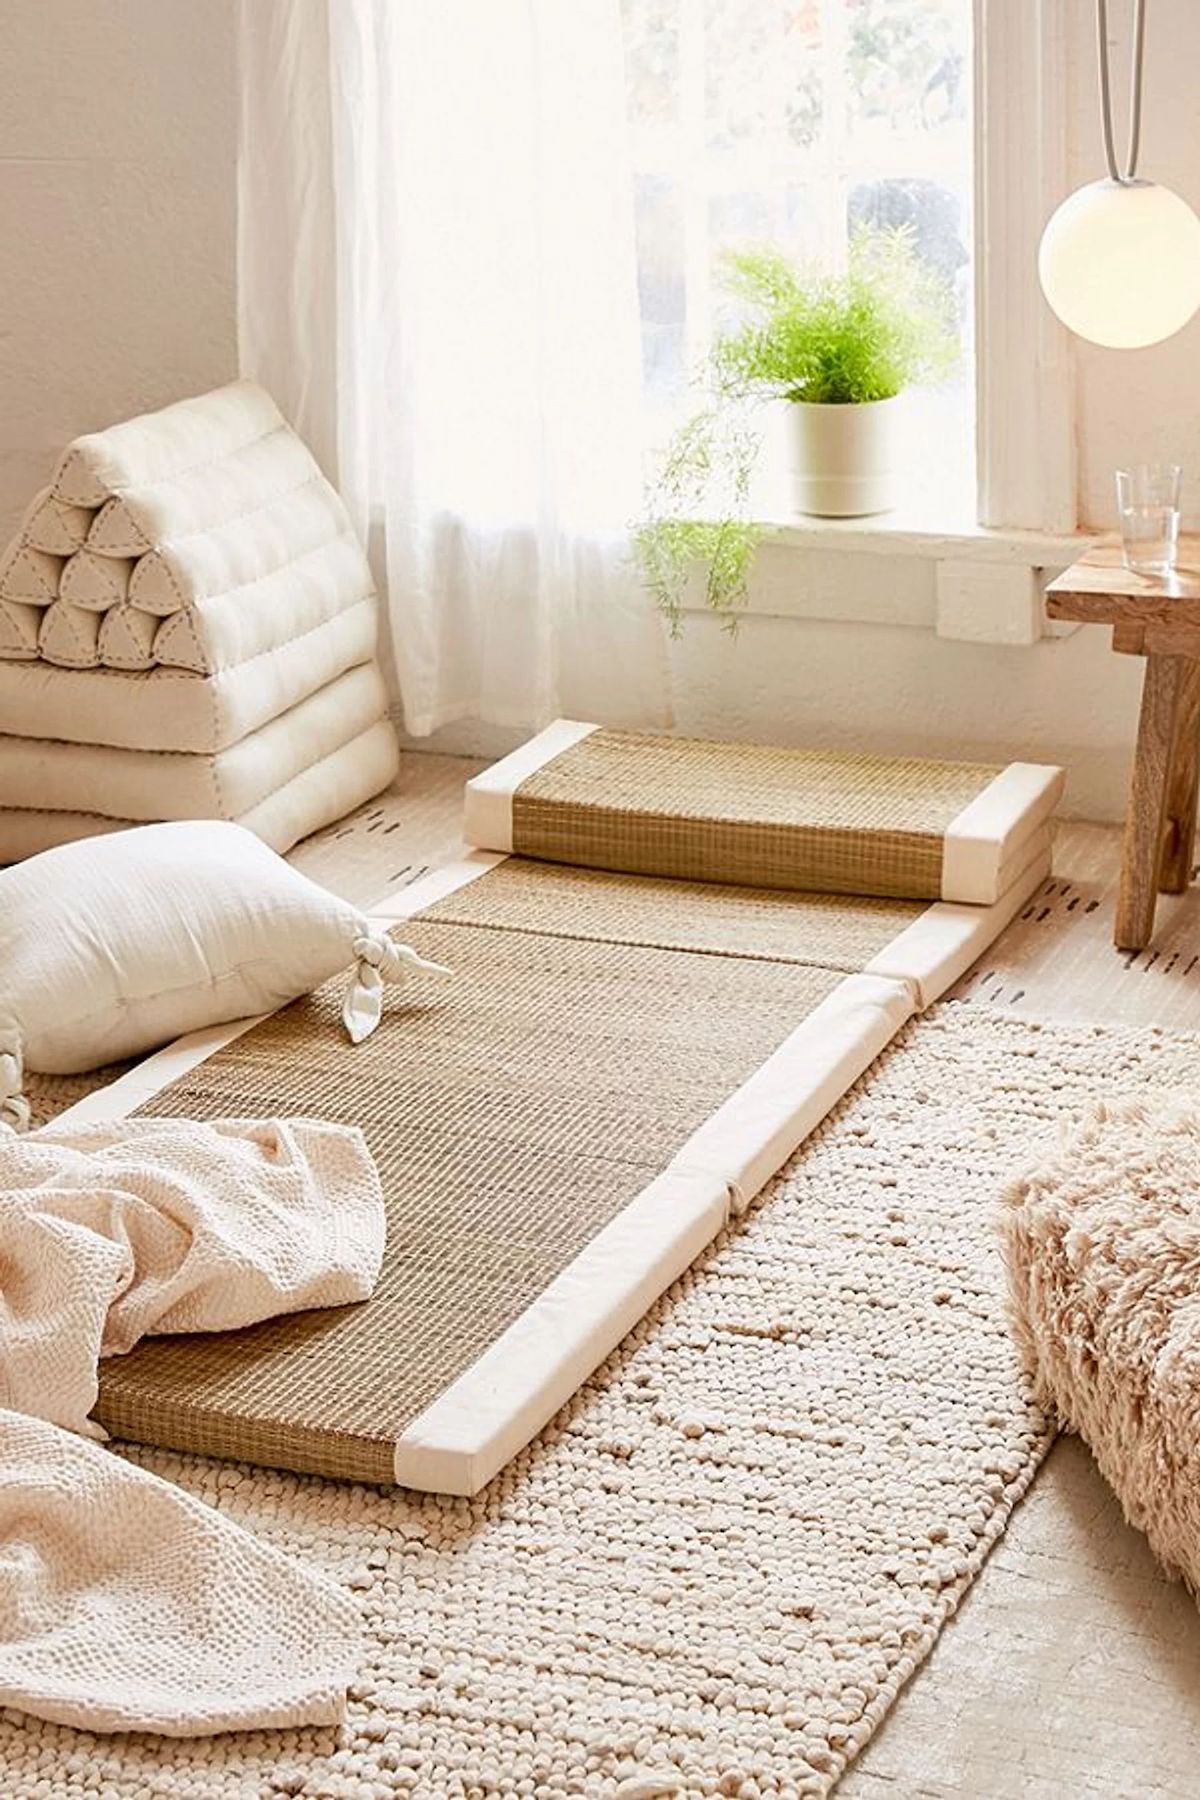 tapis de sol fibre naturelle coussin blanc écru suspension lampe opaque chambre lumineuse